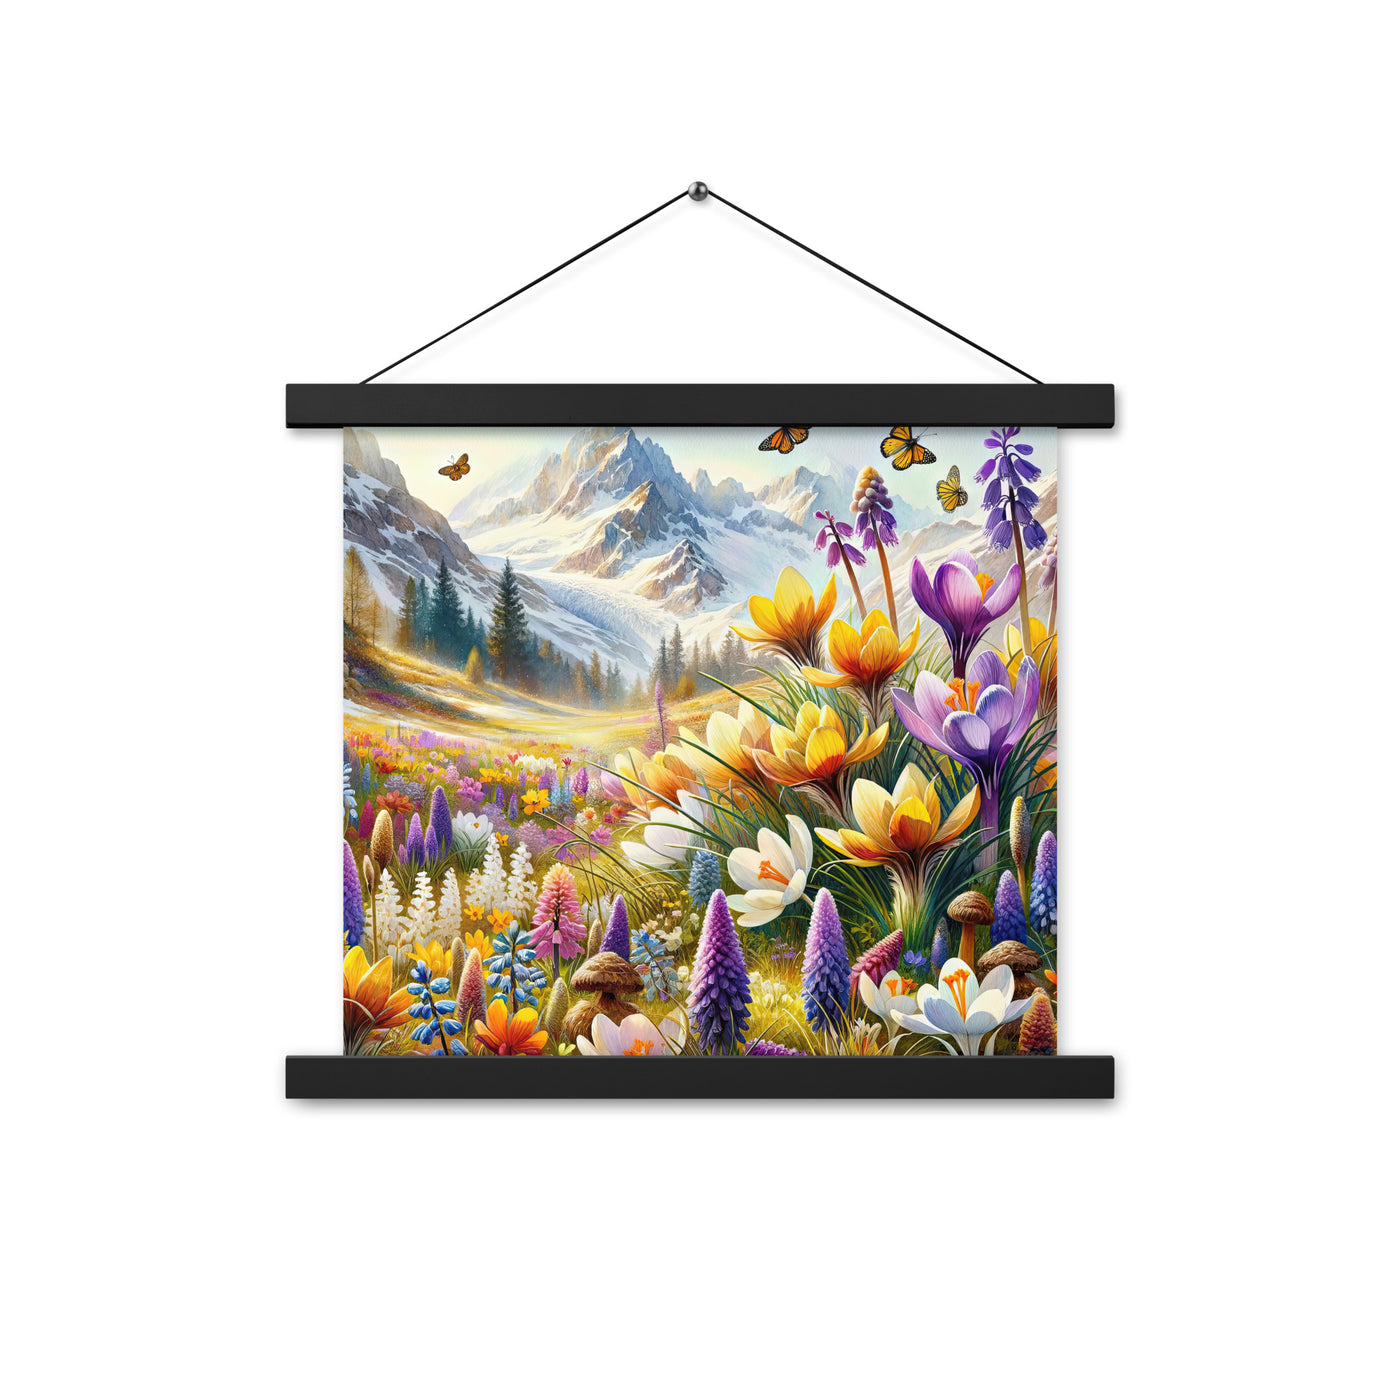 Aquarell einer ruhigen Almwiese, farbenfrohe Bergblumen in den Alpen - Premium Poster mit Aufhängung berge xxx yyy zzz 35.6 x 35.6 cm